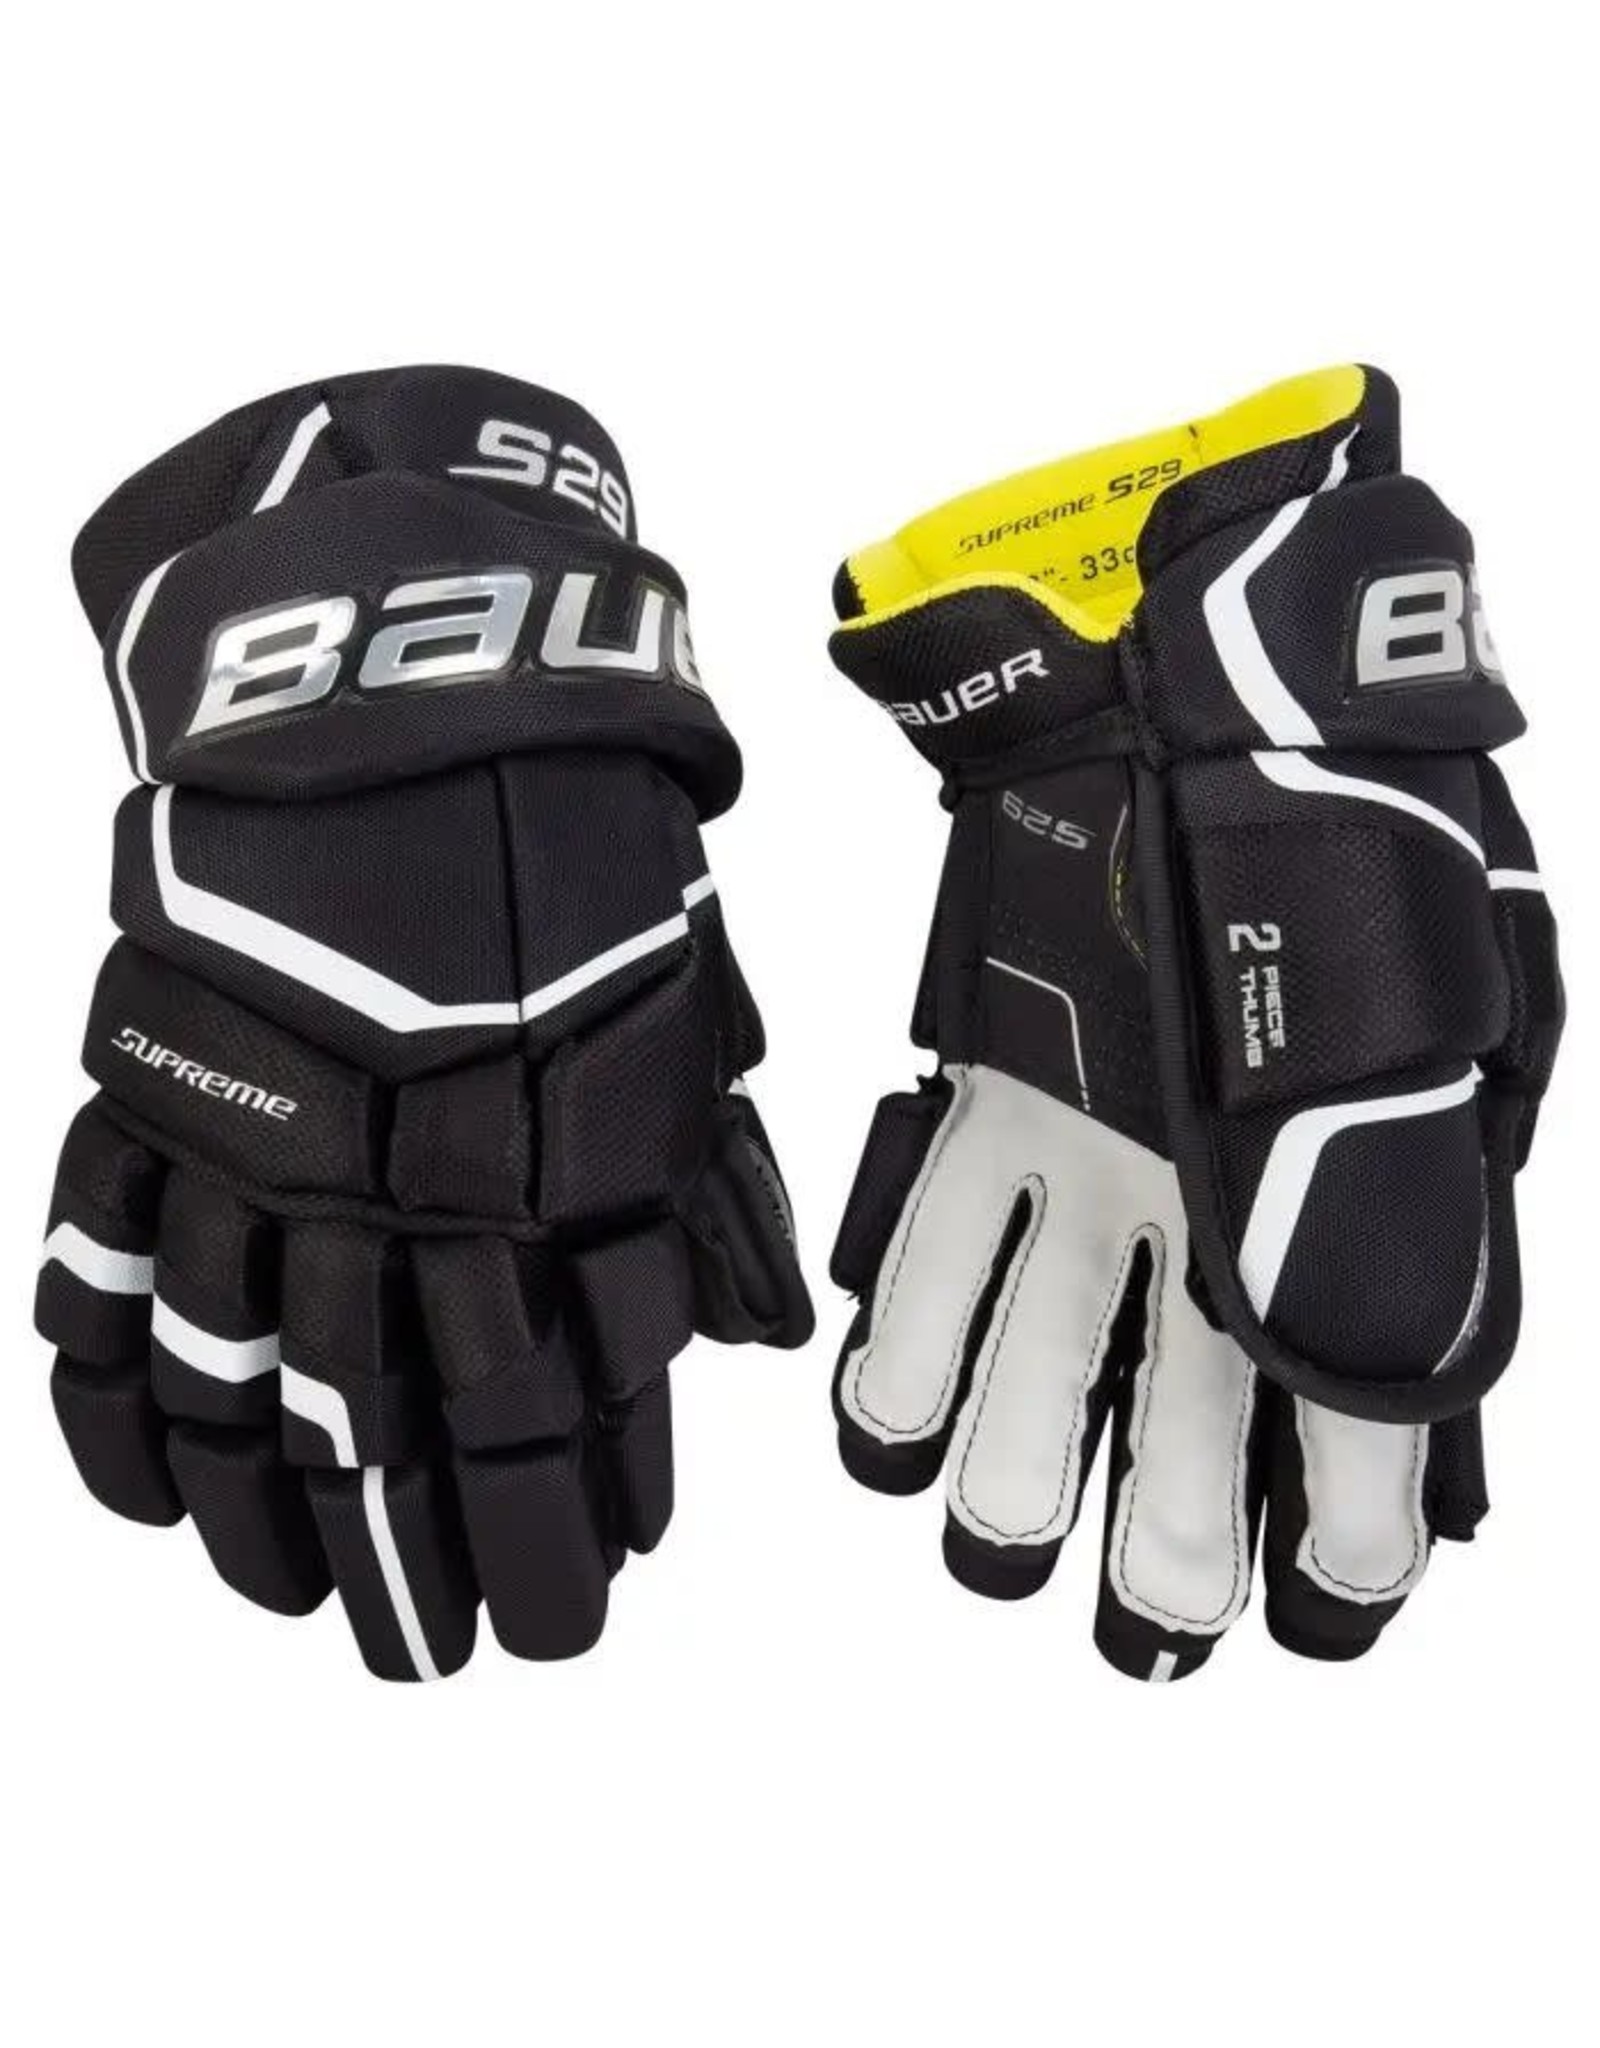 BAUER Supreme, S29, Senior, Hockey Gloves